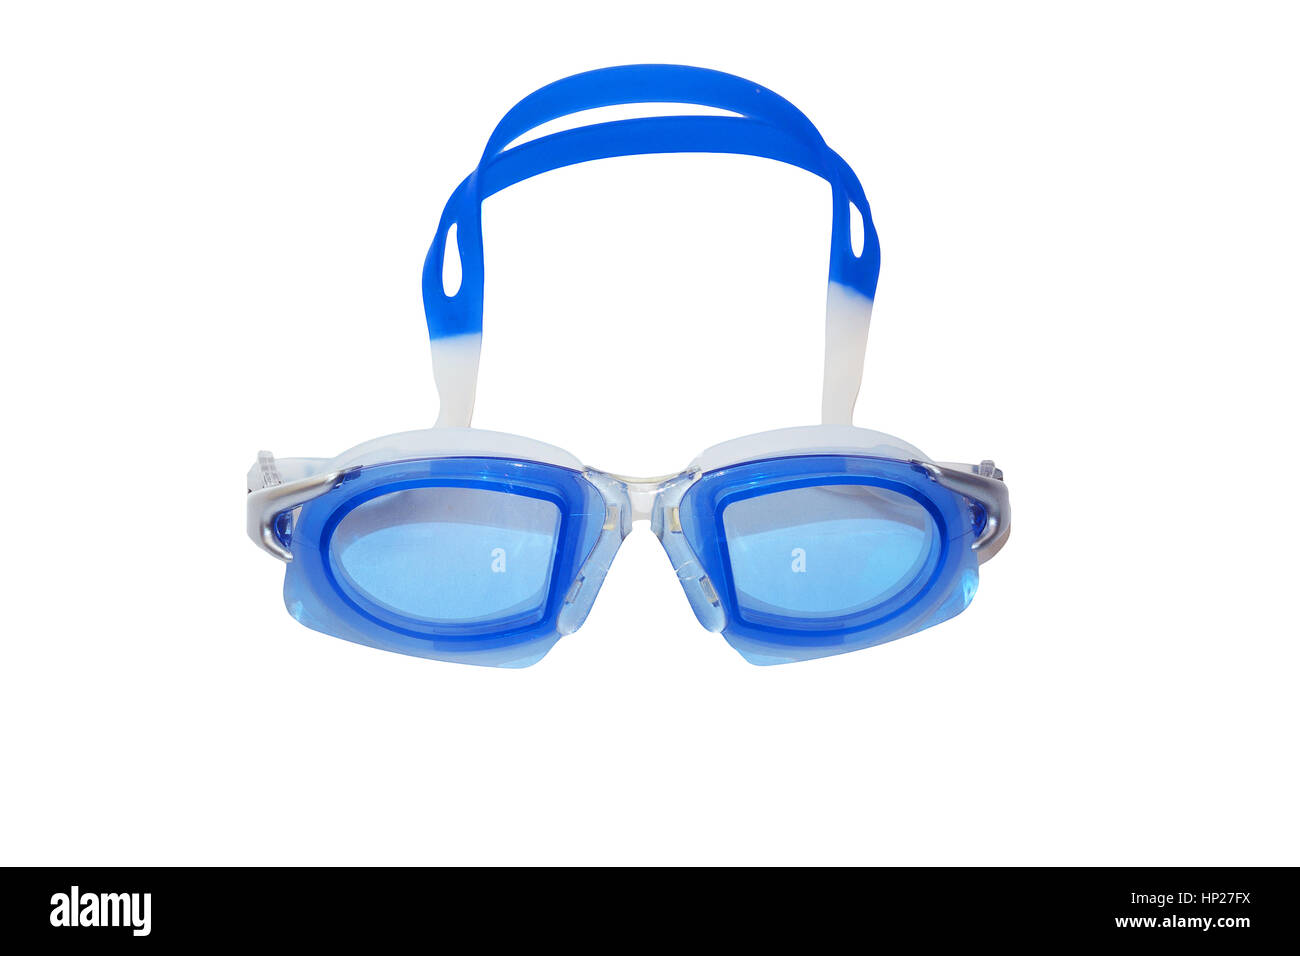 Schwimmbrillen oder schwimmen Gläser für Wasser-Sport-Konzept, isoliert auf einem weißen Hintergrund. Stockfoto